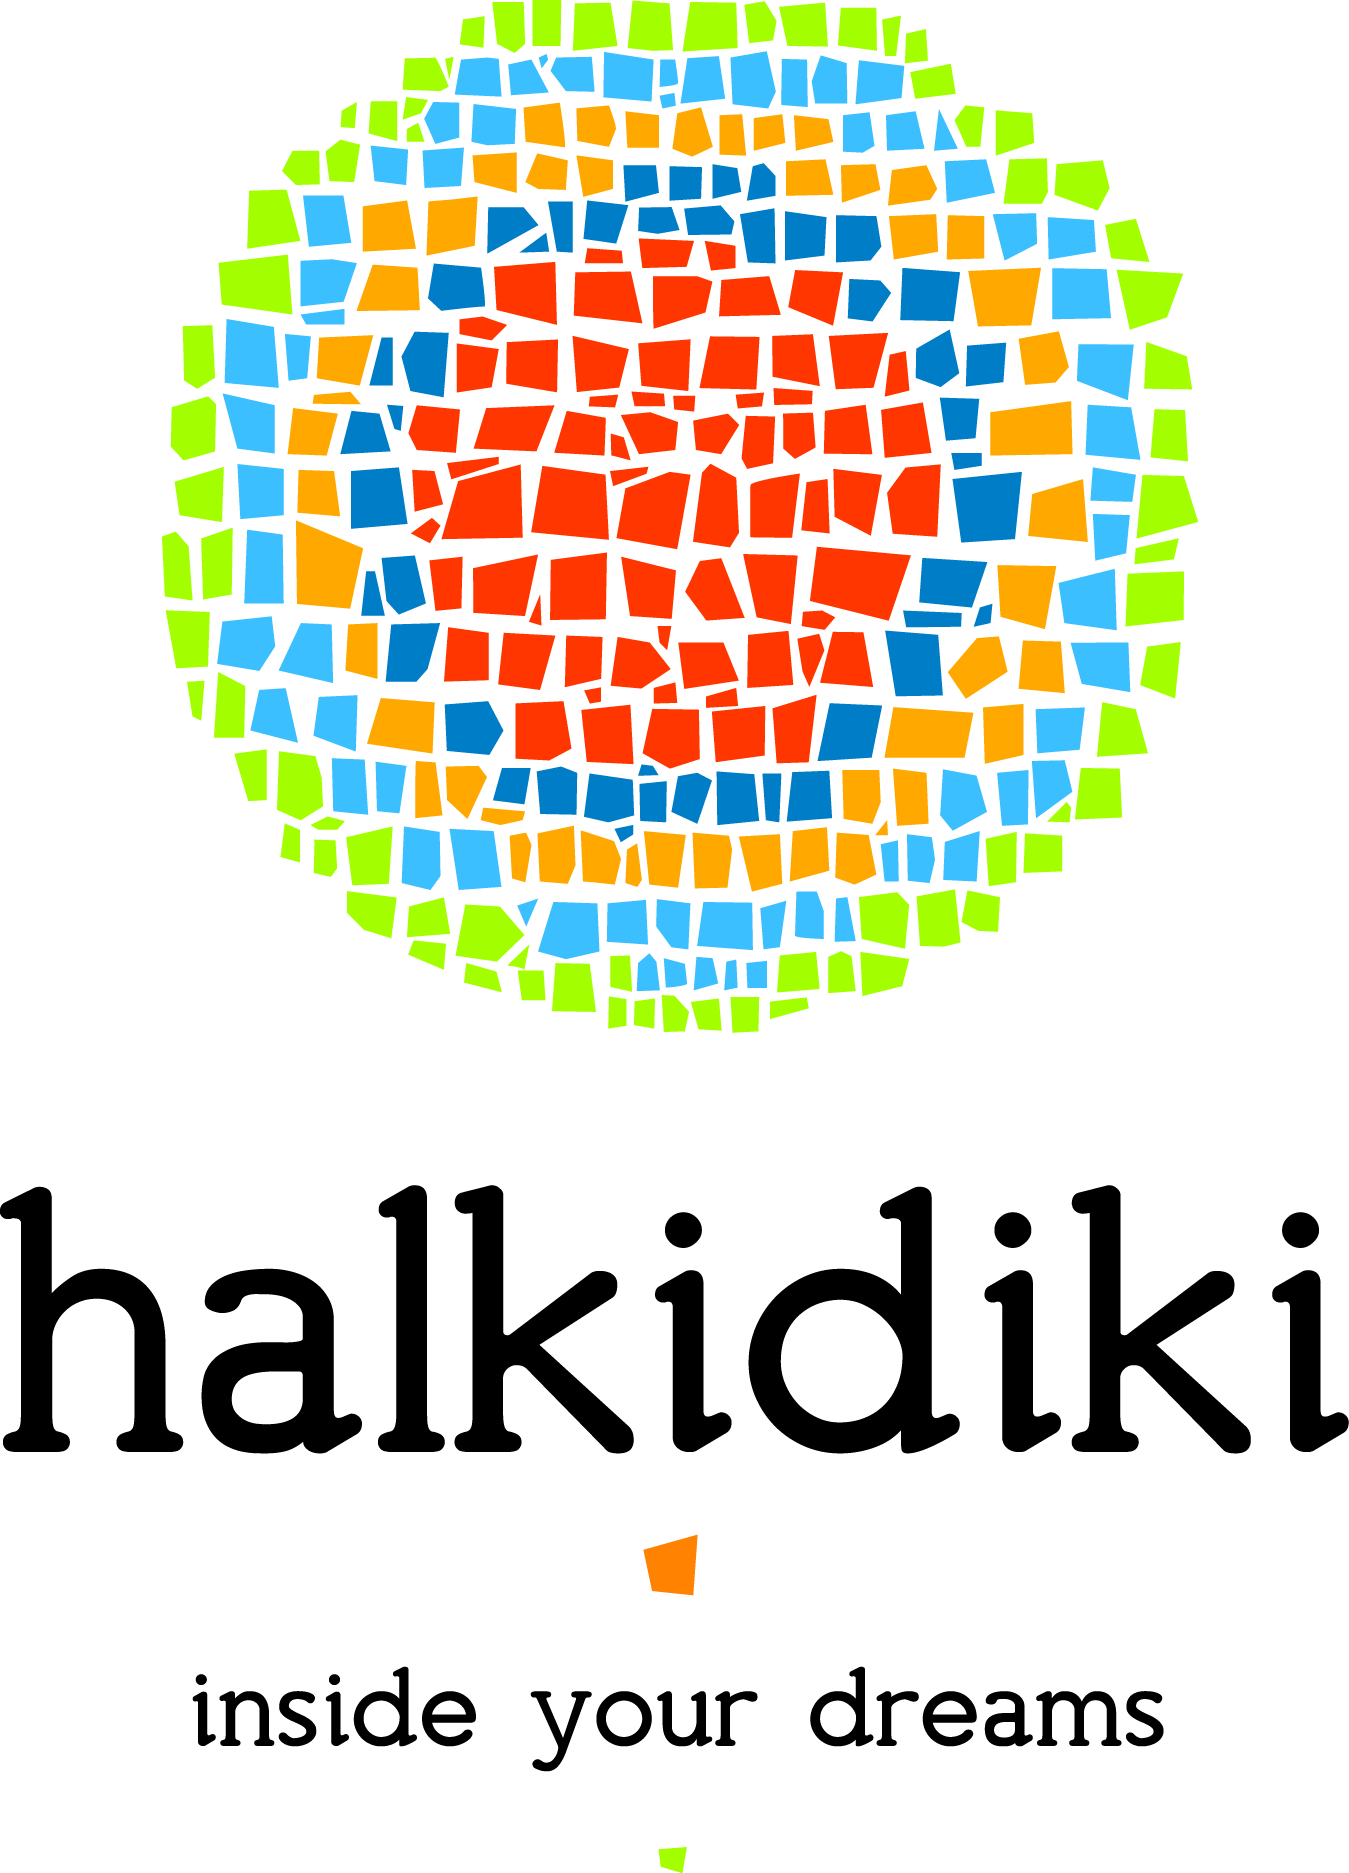 Halkidiki Tourism Organization 